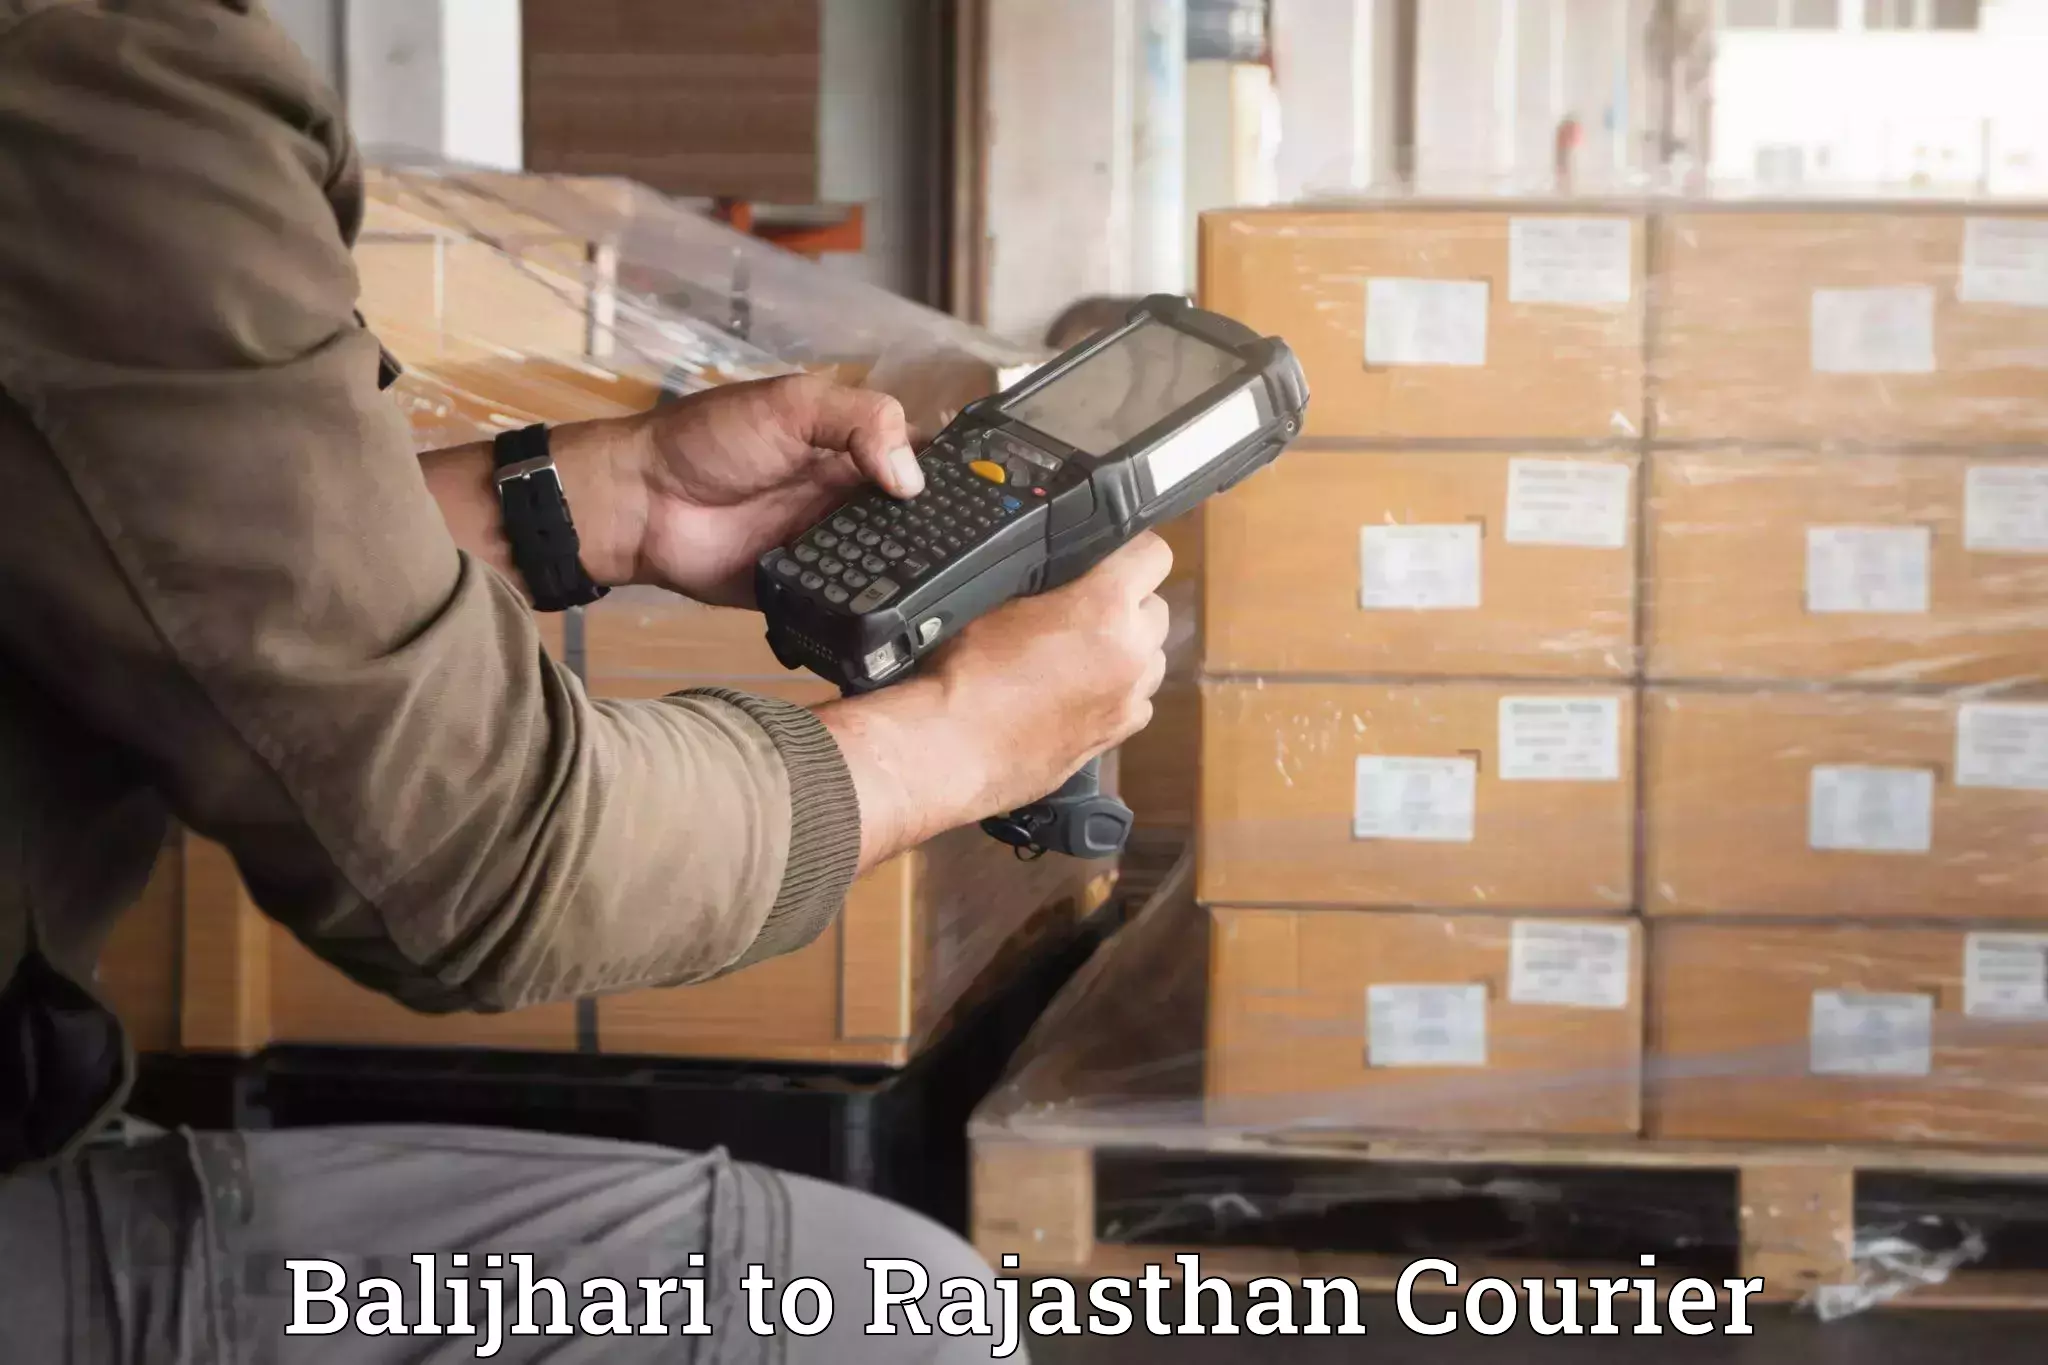 Furniture moving experts Balijhari to Rajasthan